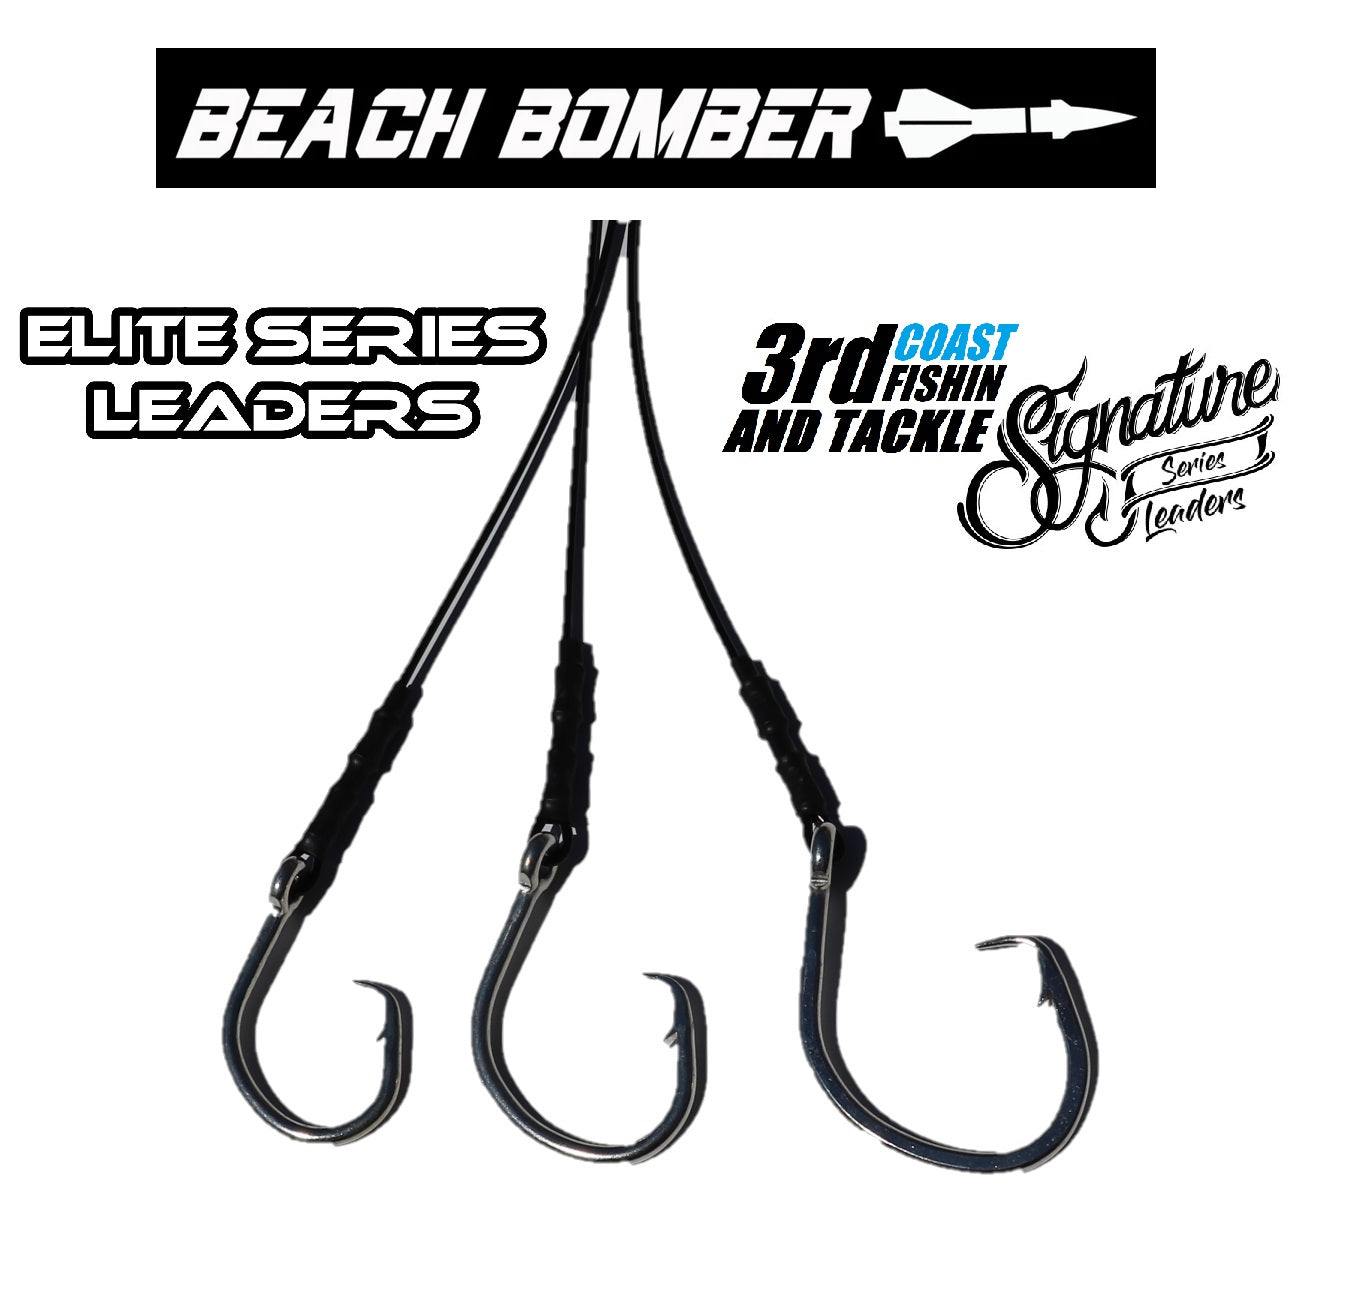 6' Beach Bomber Elite Series Leaders